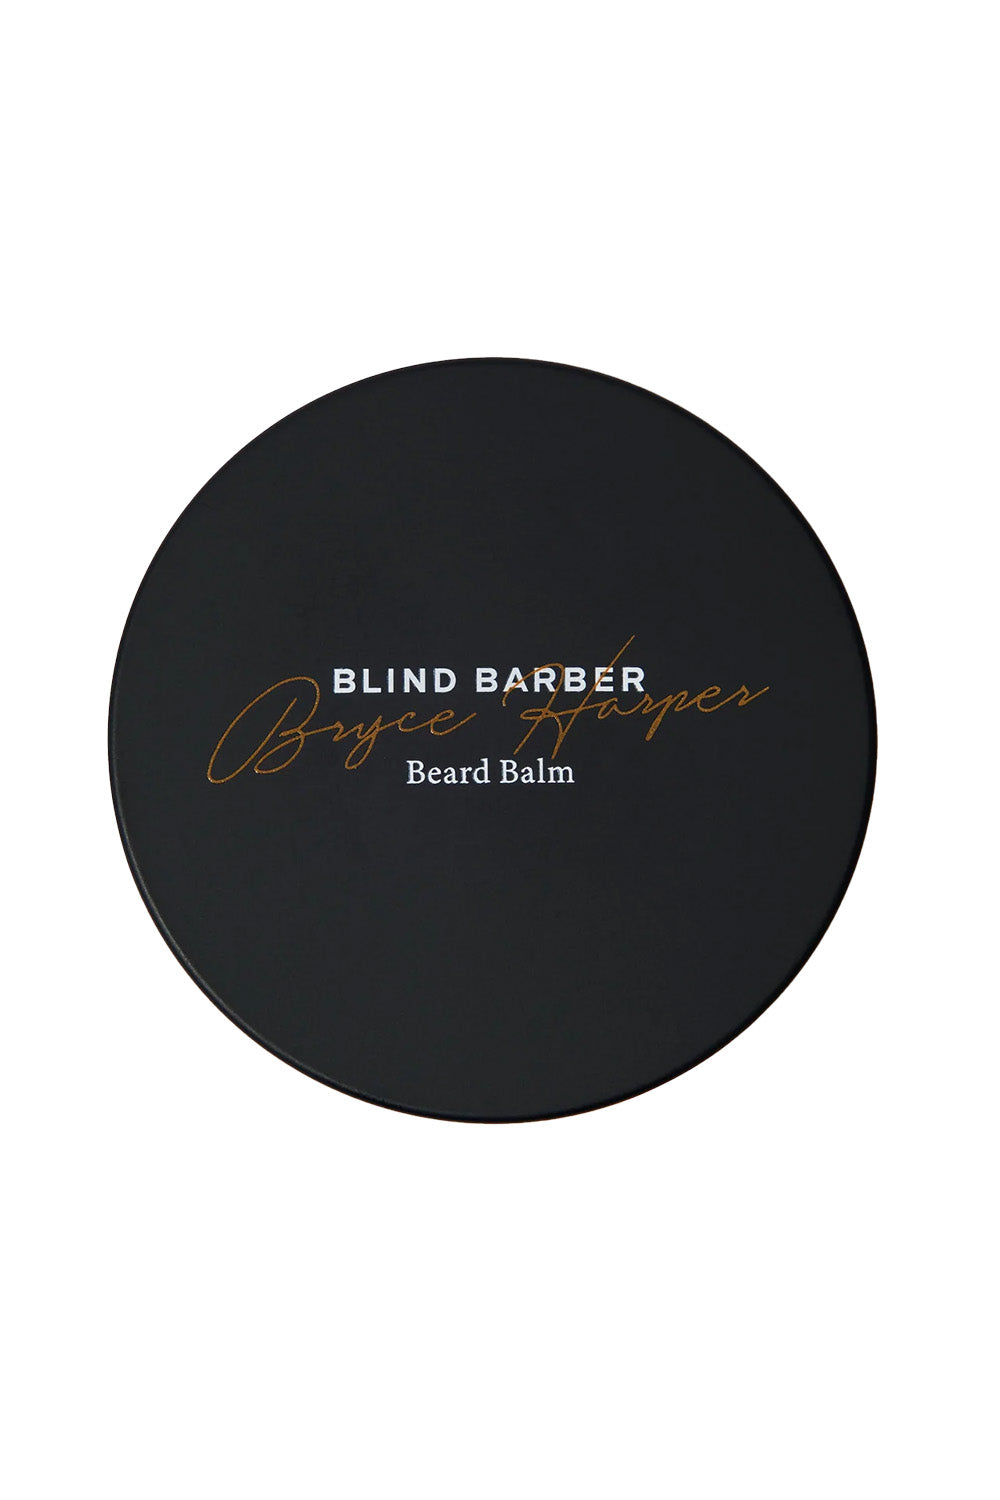 Blind Barber - Bryce Harper Beard Balm - Top